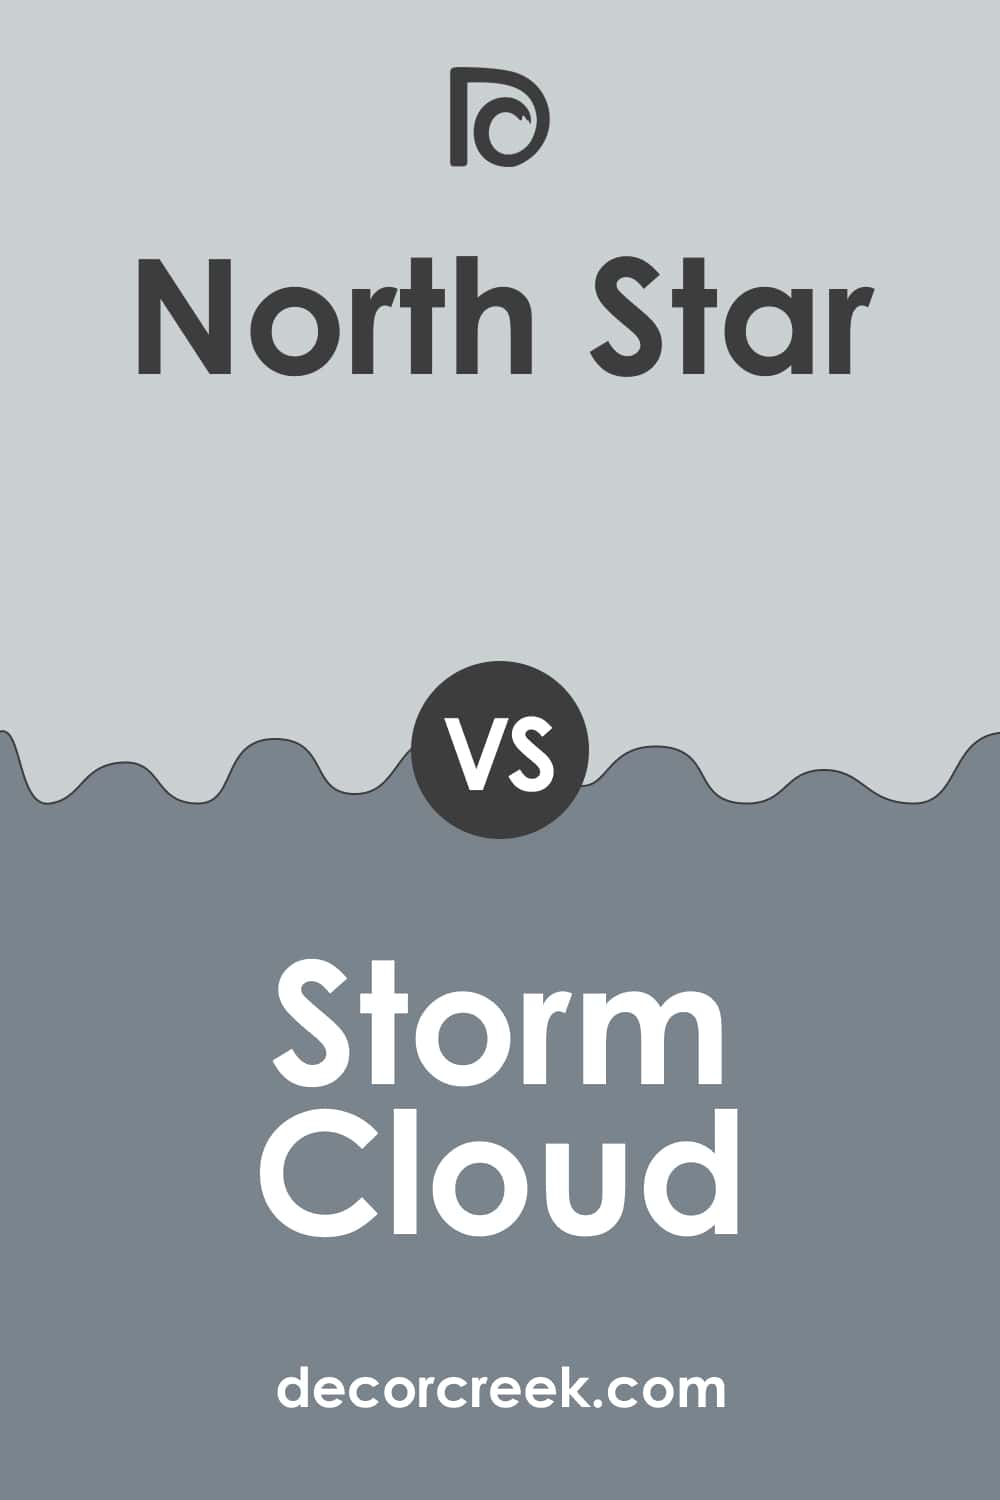 North Star vs Storm Cloud